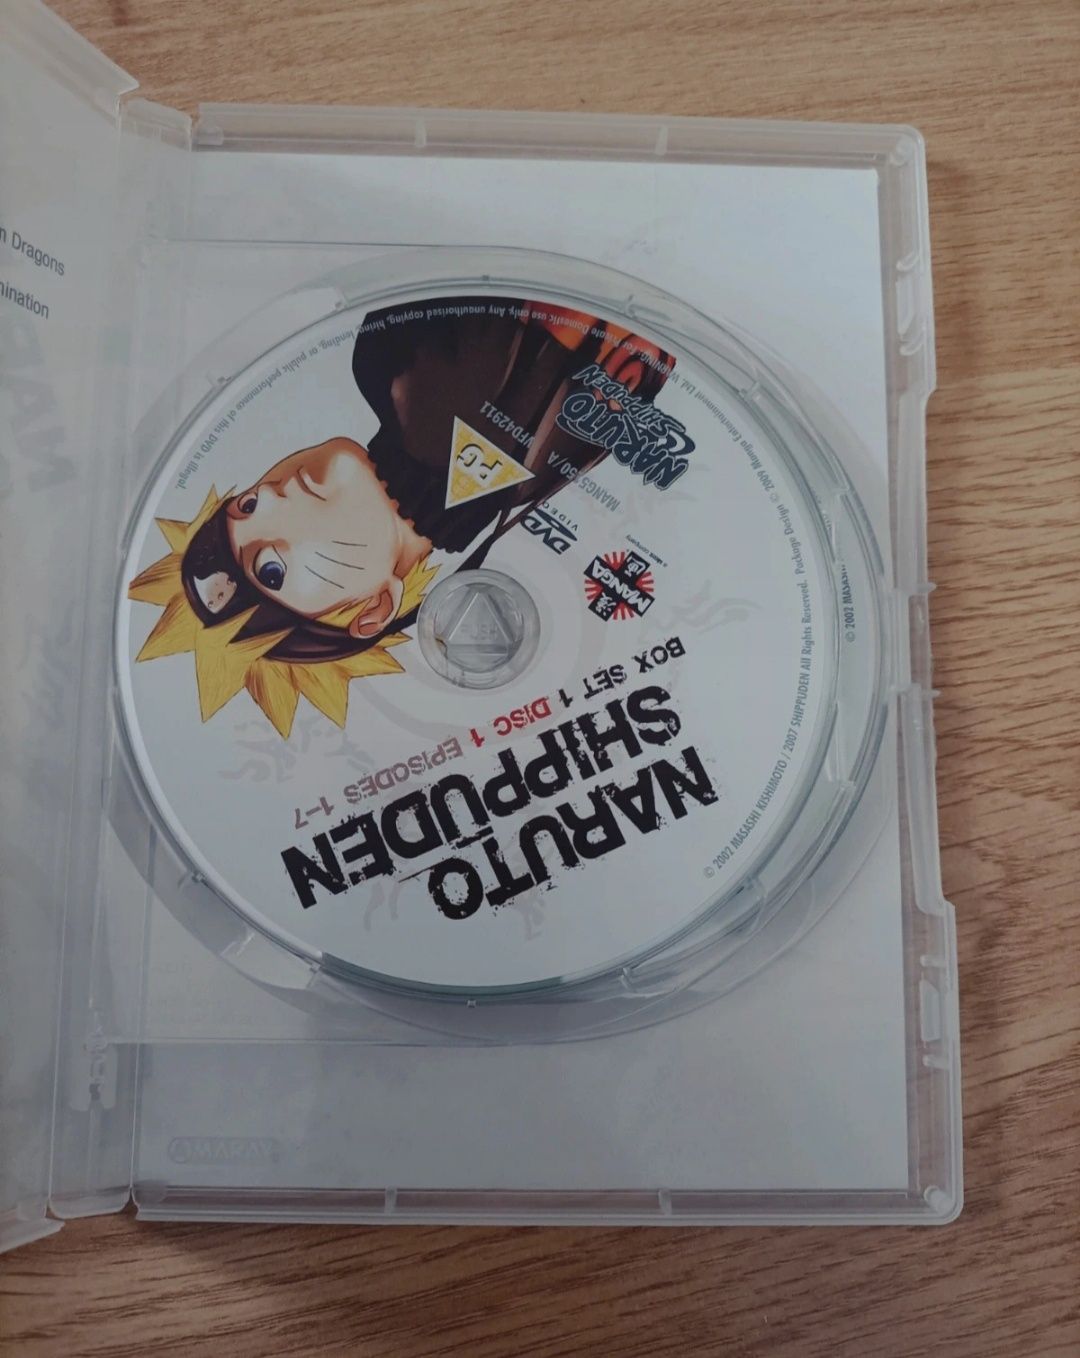 Naruto Shippuden Box set 1 DVD